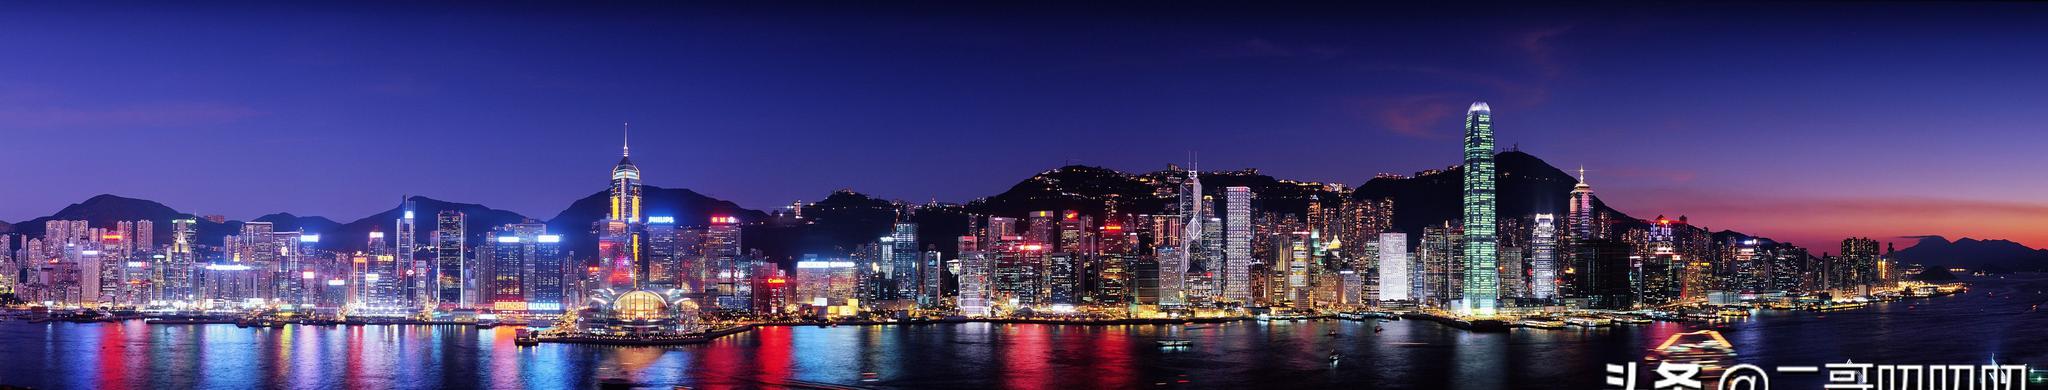 世界三大夜景之一香港夜景照片欣赏